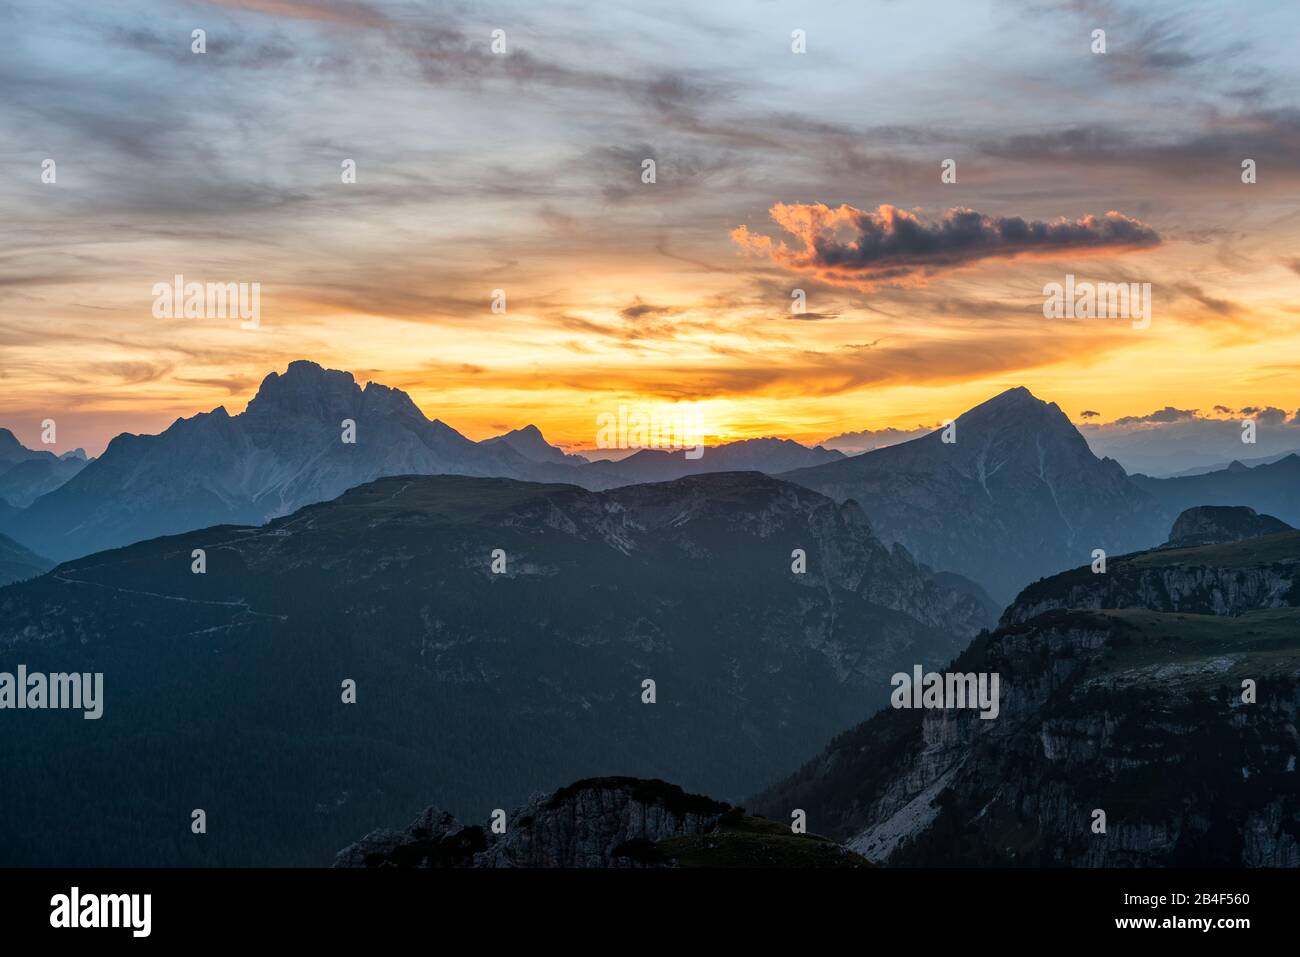 Monte Campedelle, Misurina, Auronzo di Cadore, Provinz Belluno, Venetien, Italien, Europa. Sonneuntergang über der Hohen Gaisl und dem Dürrenstein Stock Photo